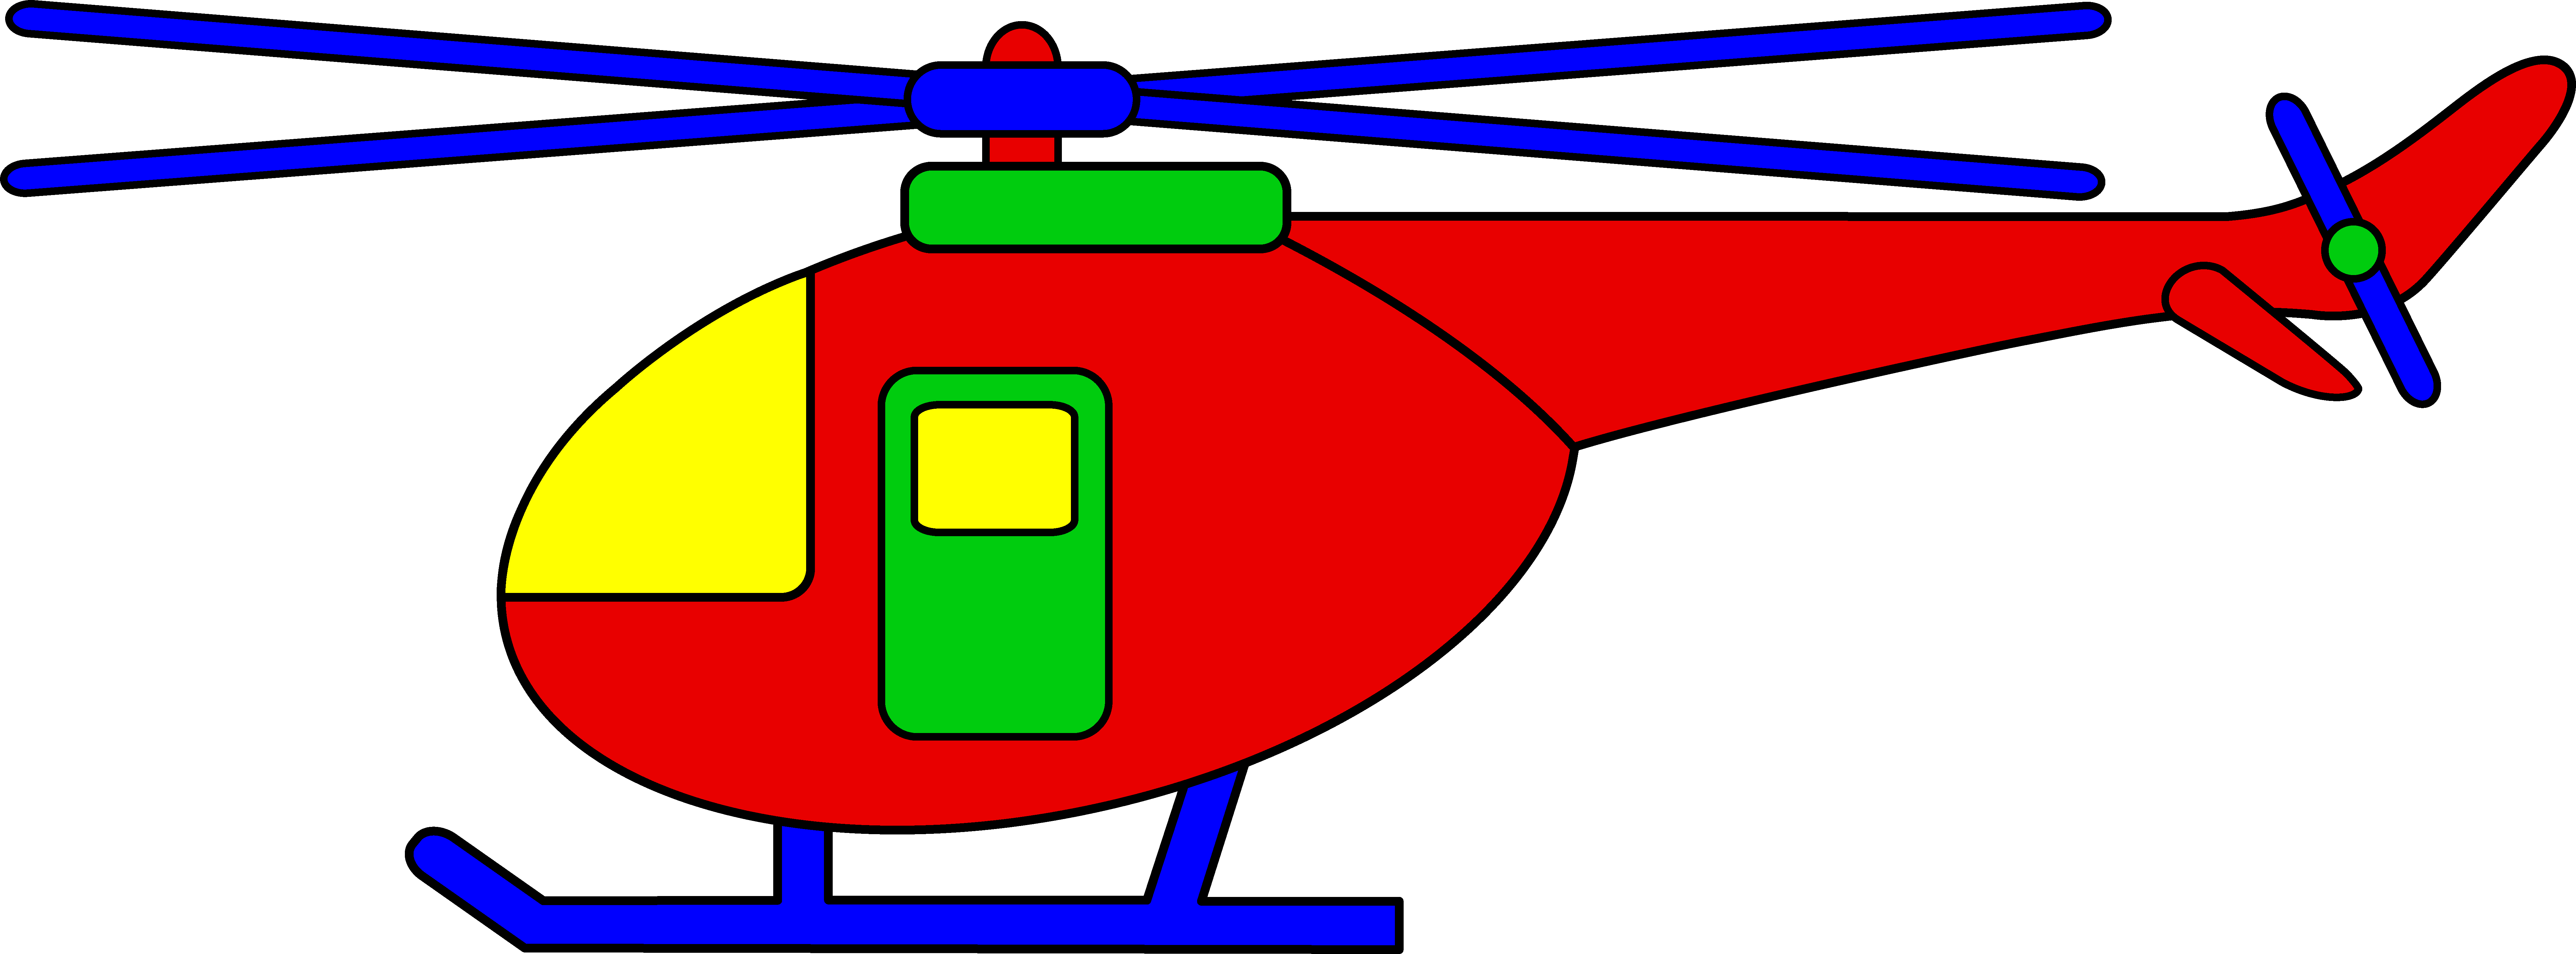 Helicopter Clip Art - Tumundografico